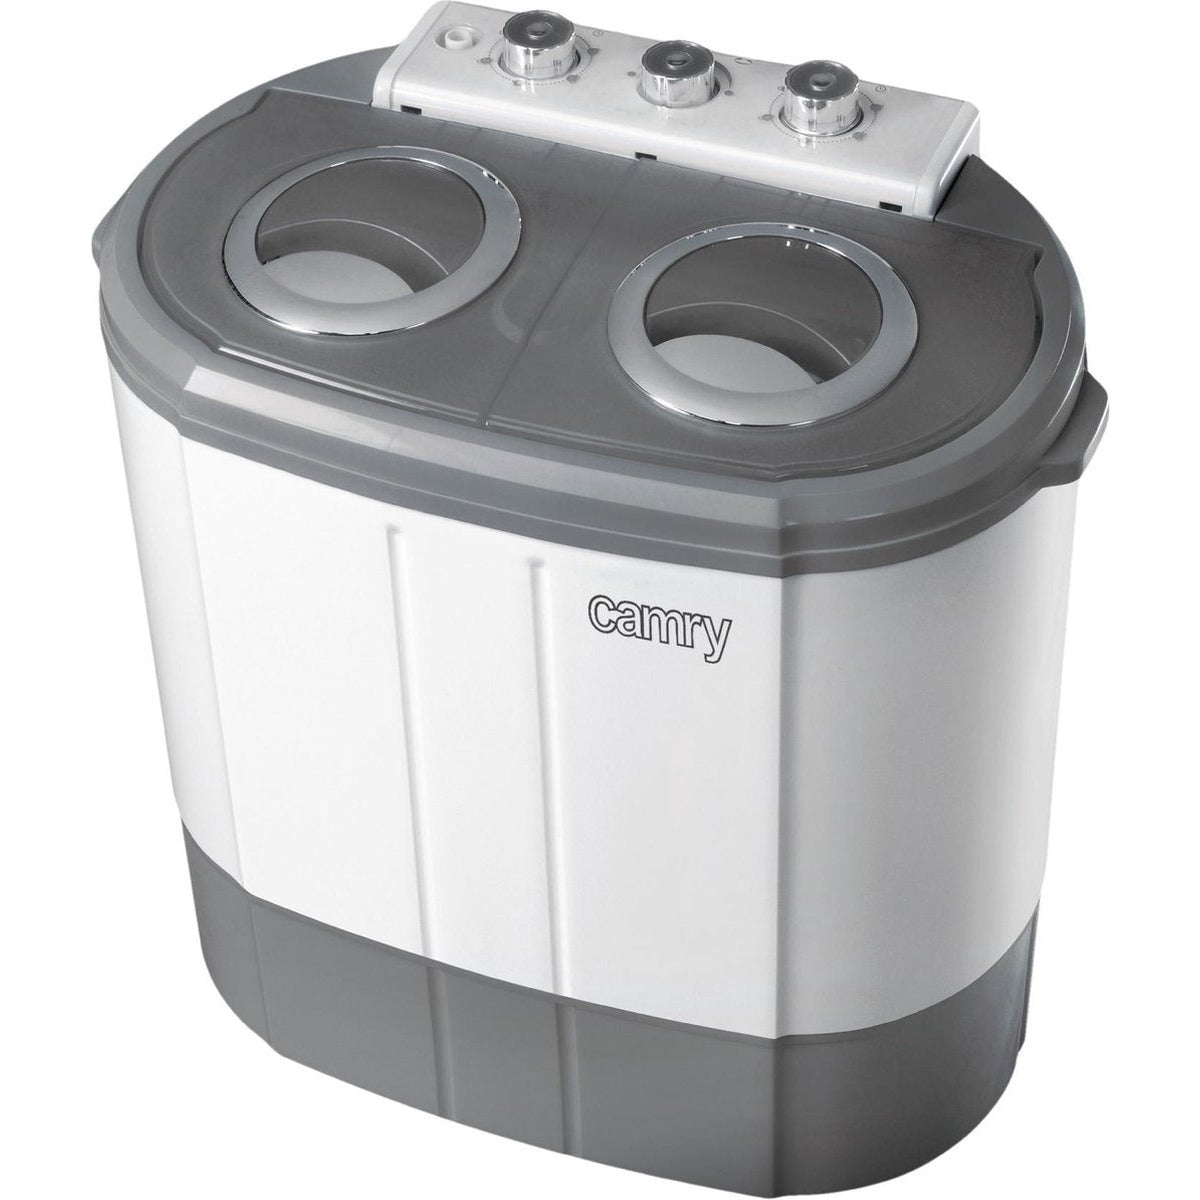 Verlaten Diagnostiseren ondeugd Camry camping mini wasmachine met centrifuge tot 3kg – Voordeelstore.nl